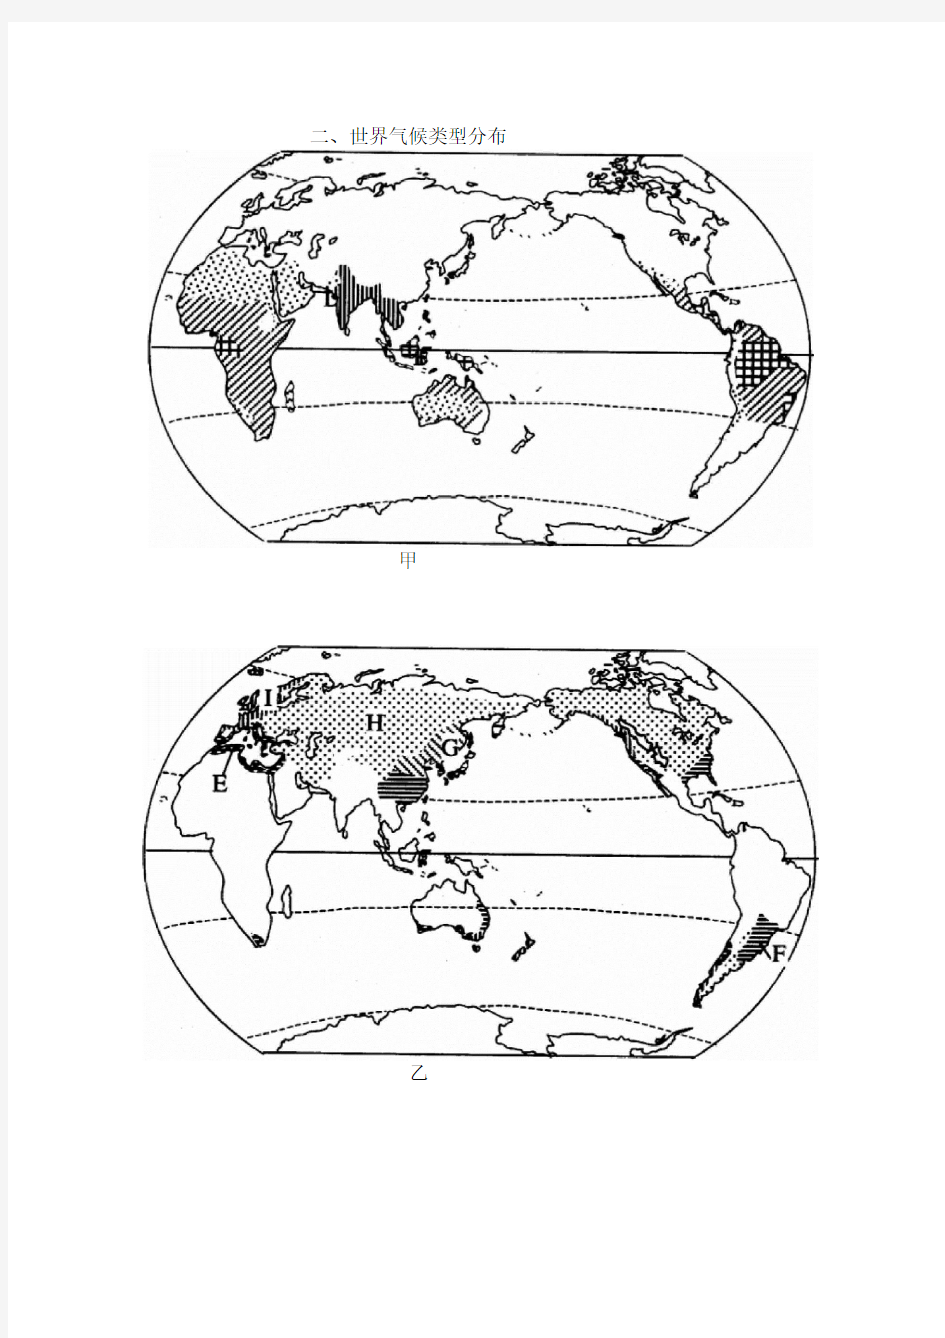 全球气候类型分布、特点及成因(表格)